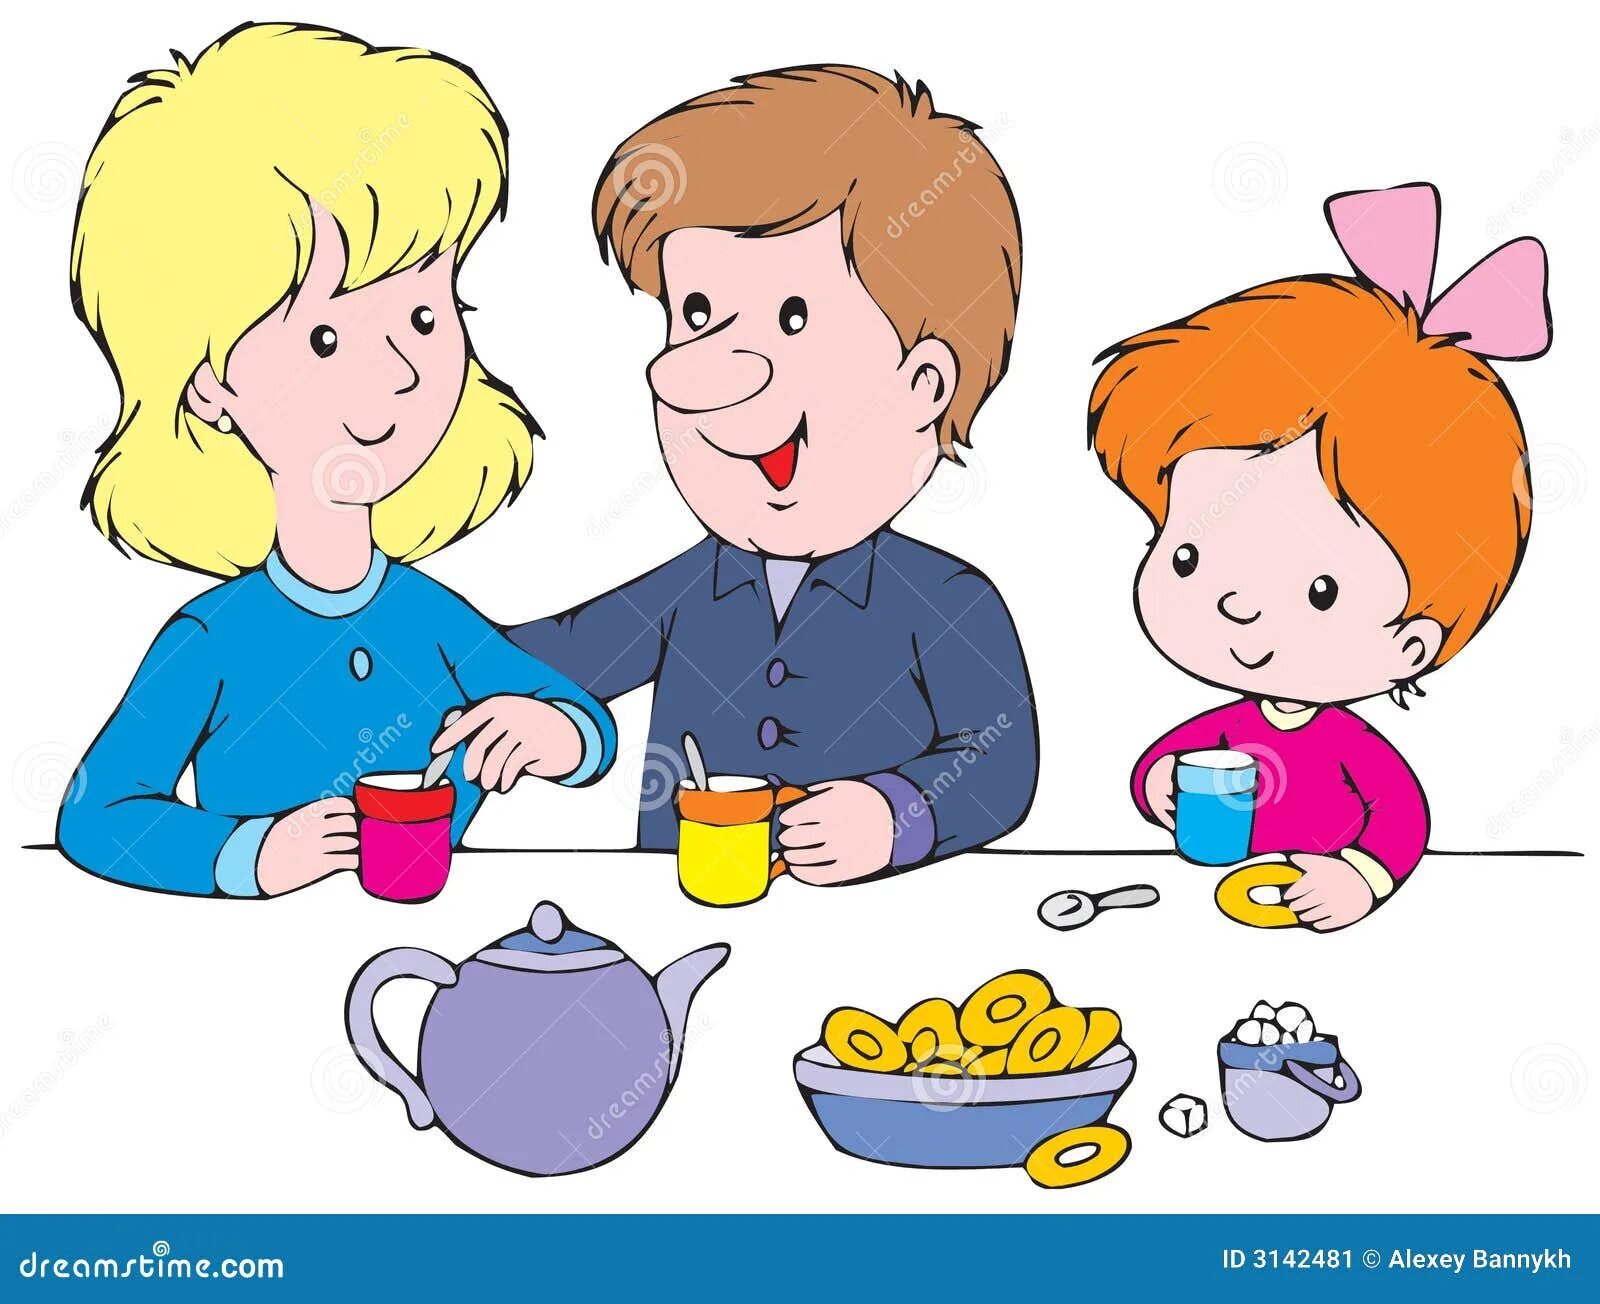 Ужин картинка для детей. Дети за столом мультяшные. Ужинать картинки для детей. Семейный завтрак рисунок. Папа чай пить